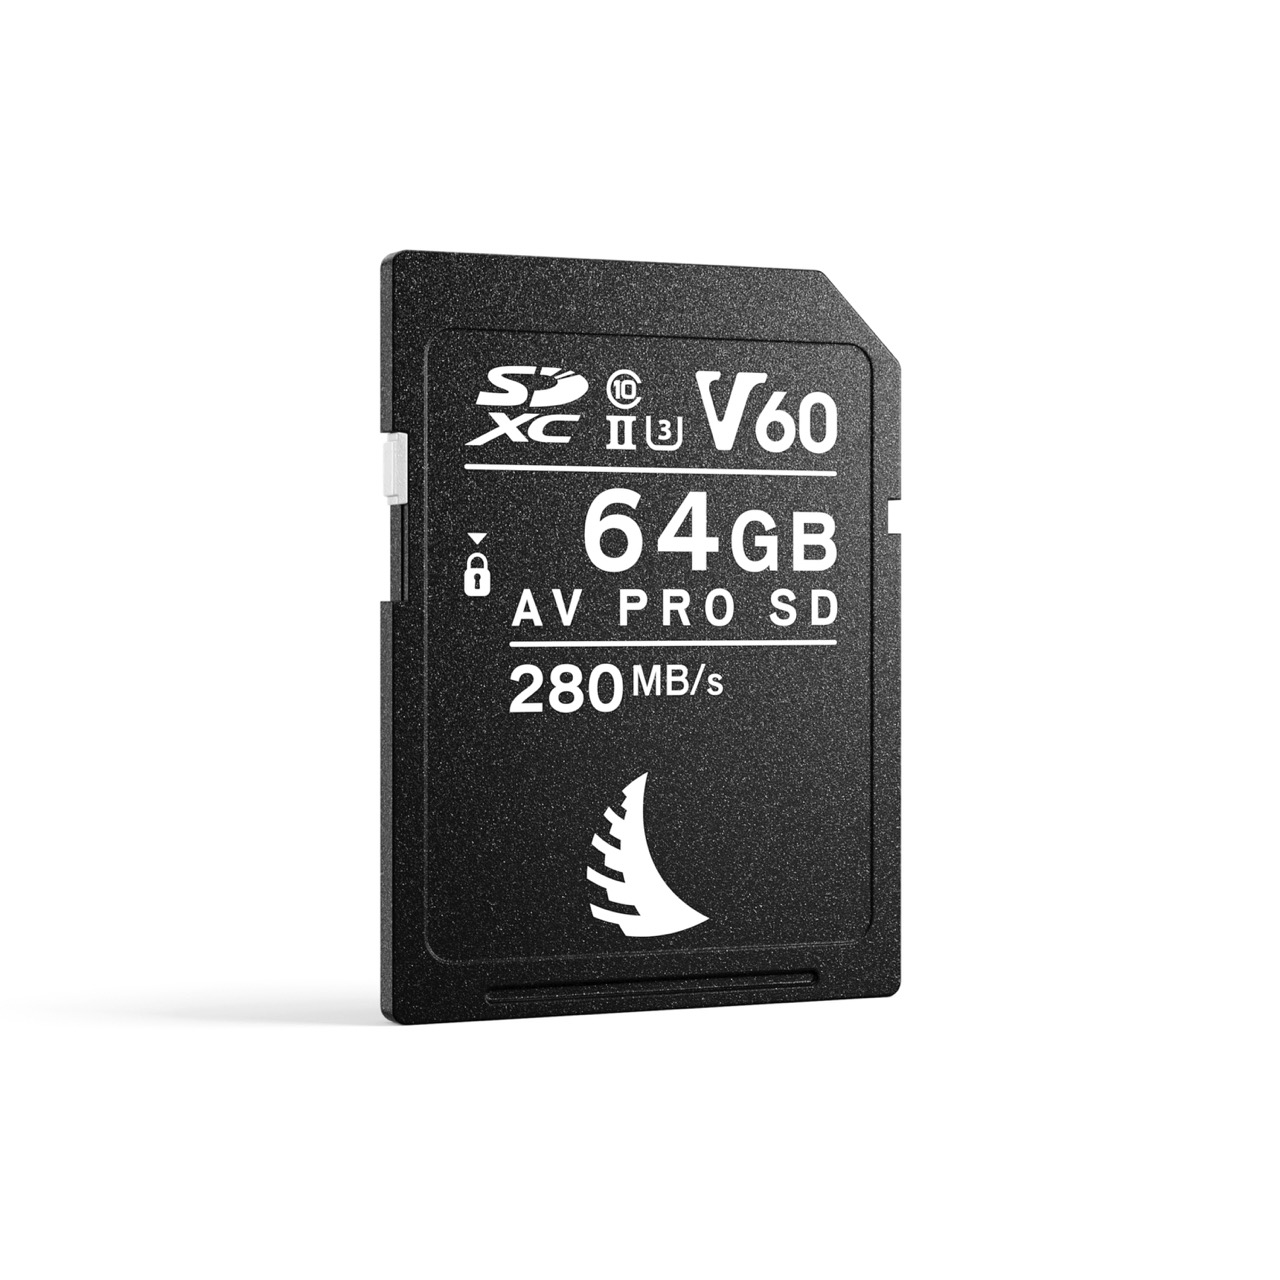 Angelbird AV PRO SD V60 MK2 64GB Speicherkarte, Frontal Schräg